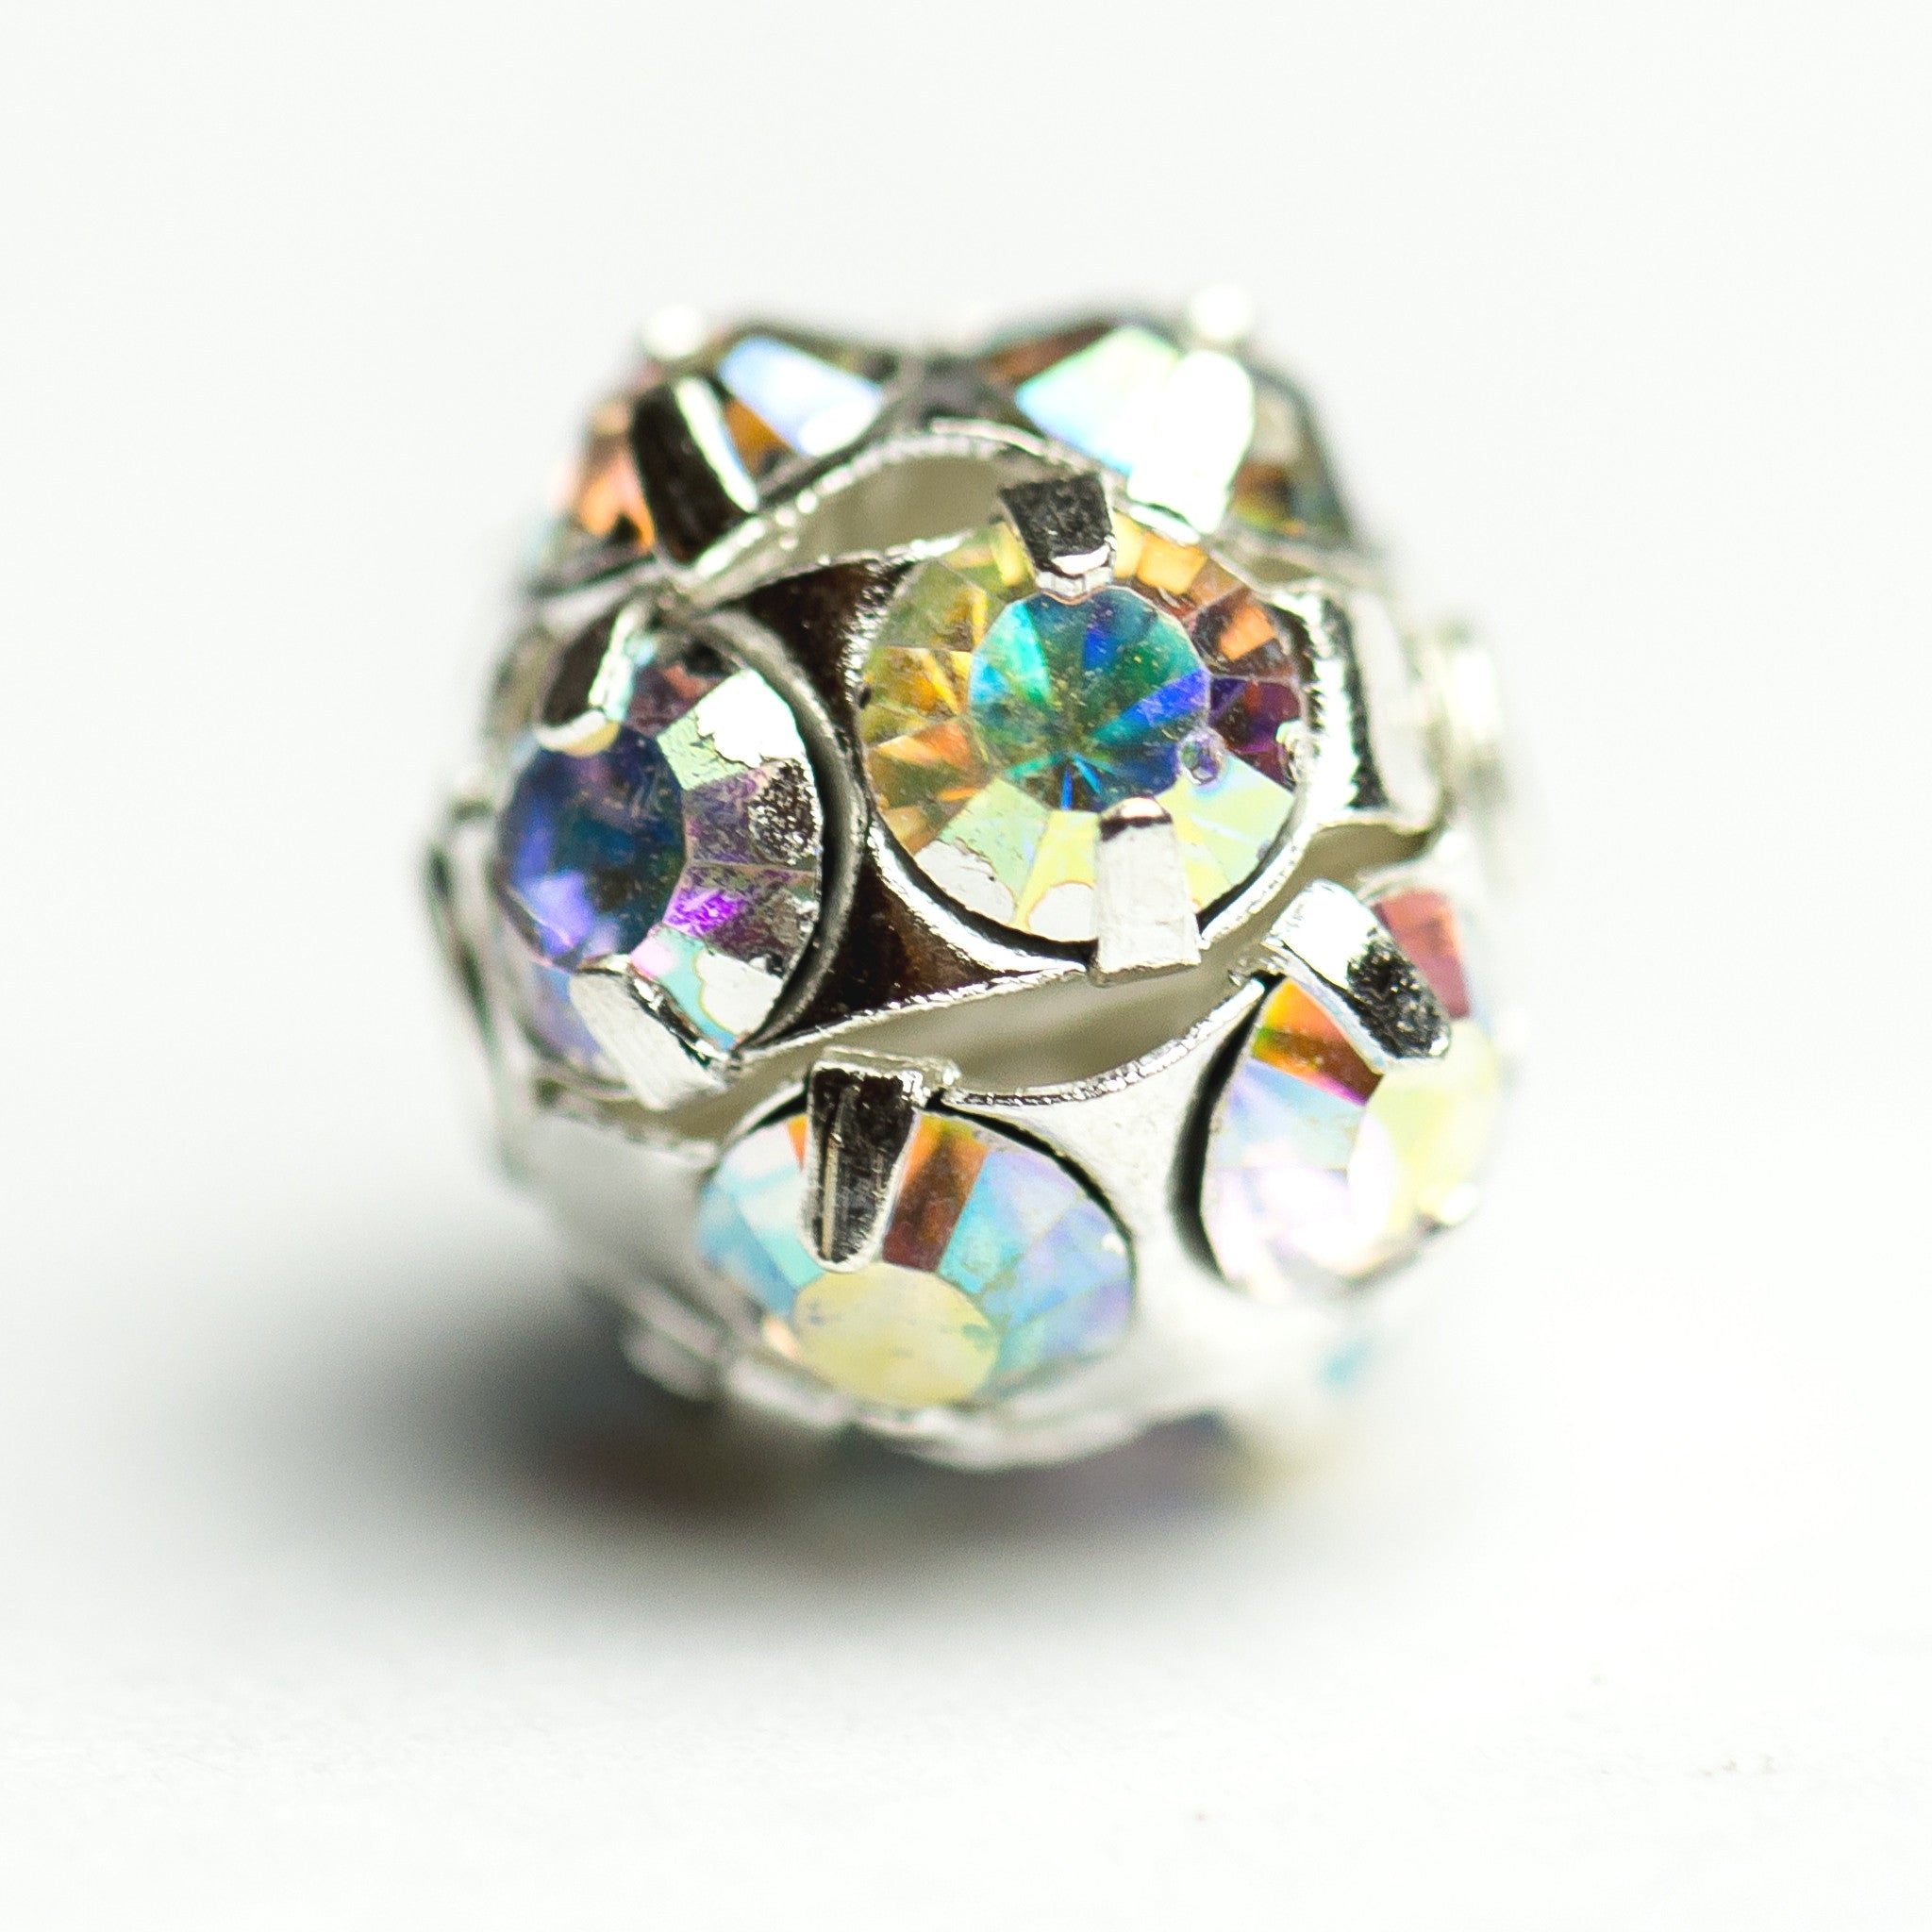 12MM Rhinestone Ball Crystal Ab/Silver (2 pieces)